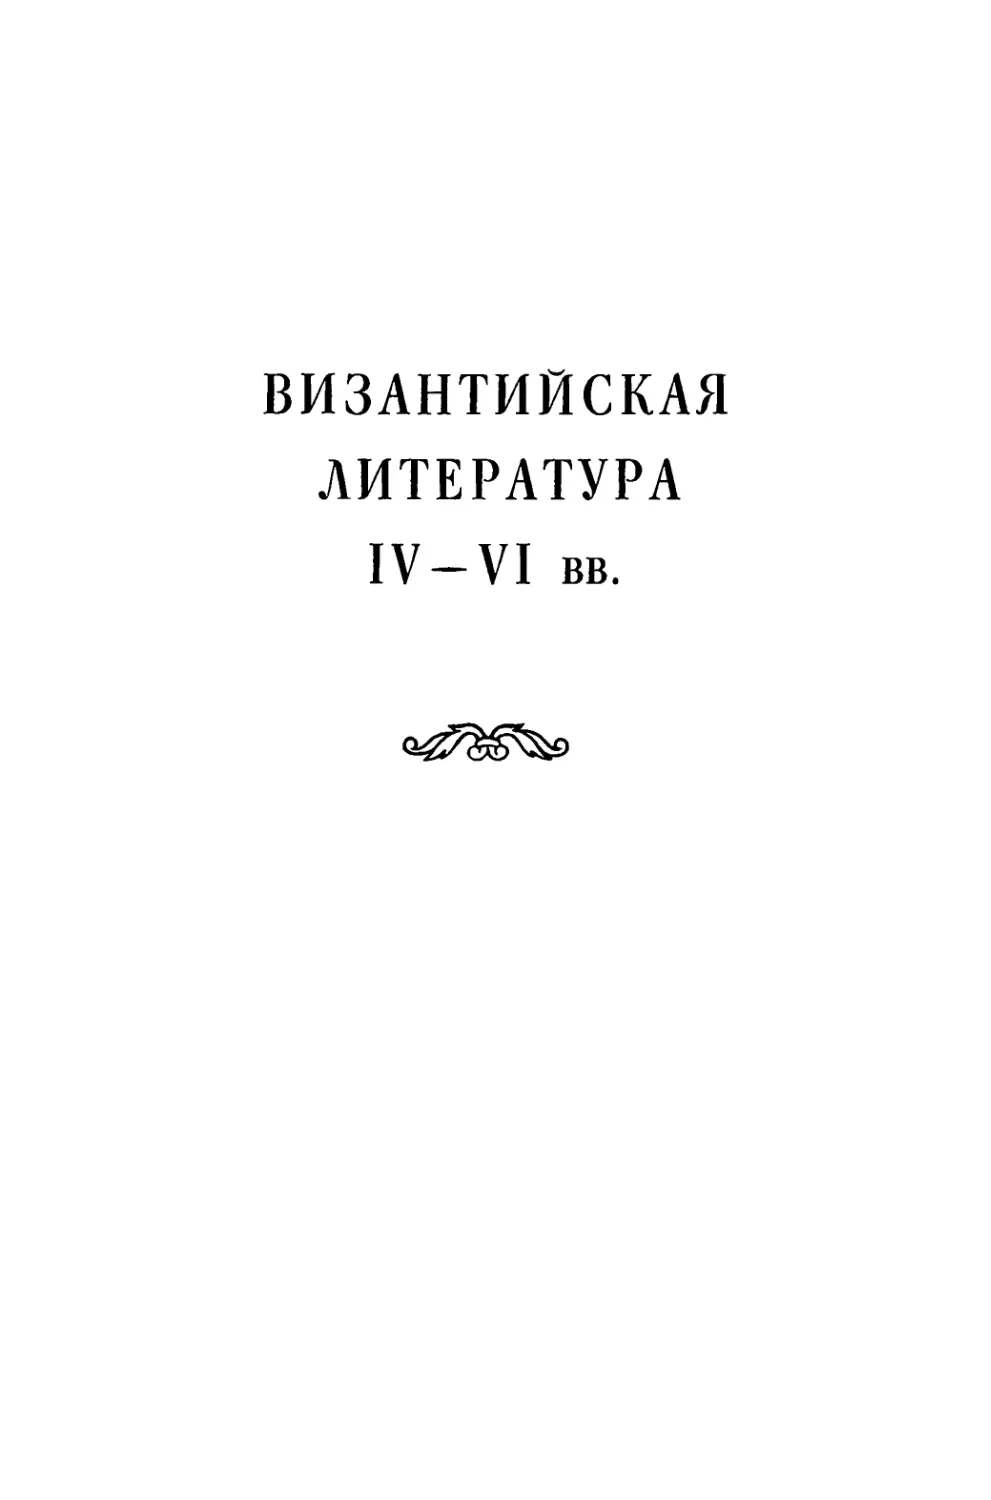 Византийская литература ІV—VІ вв. Л. А. Фрейберг, Т. В. Попова